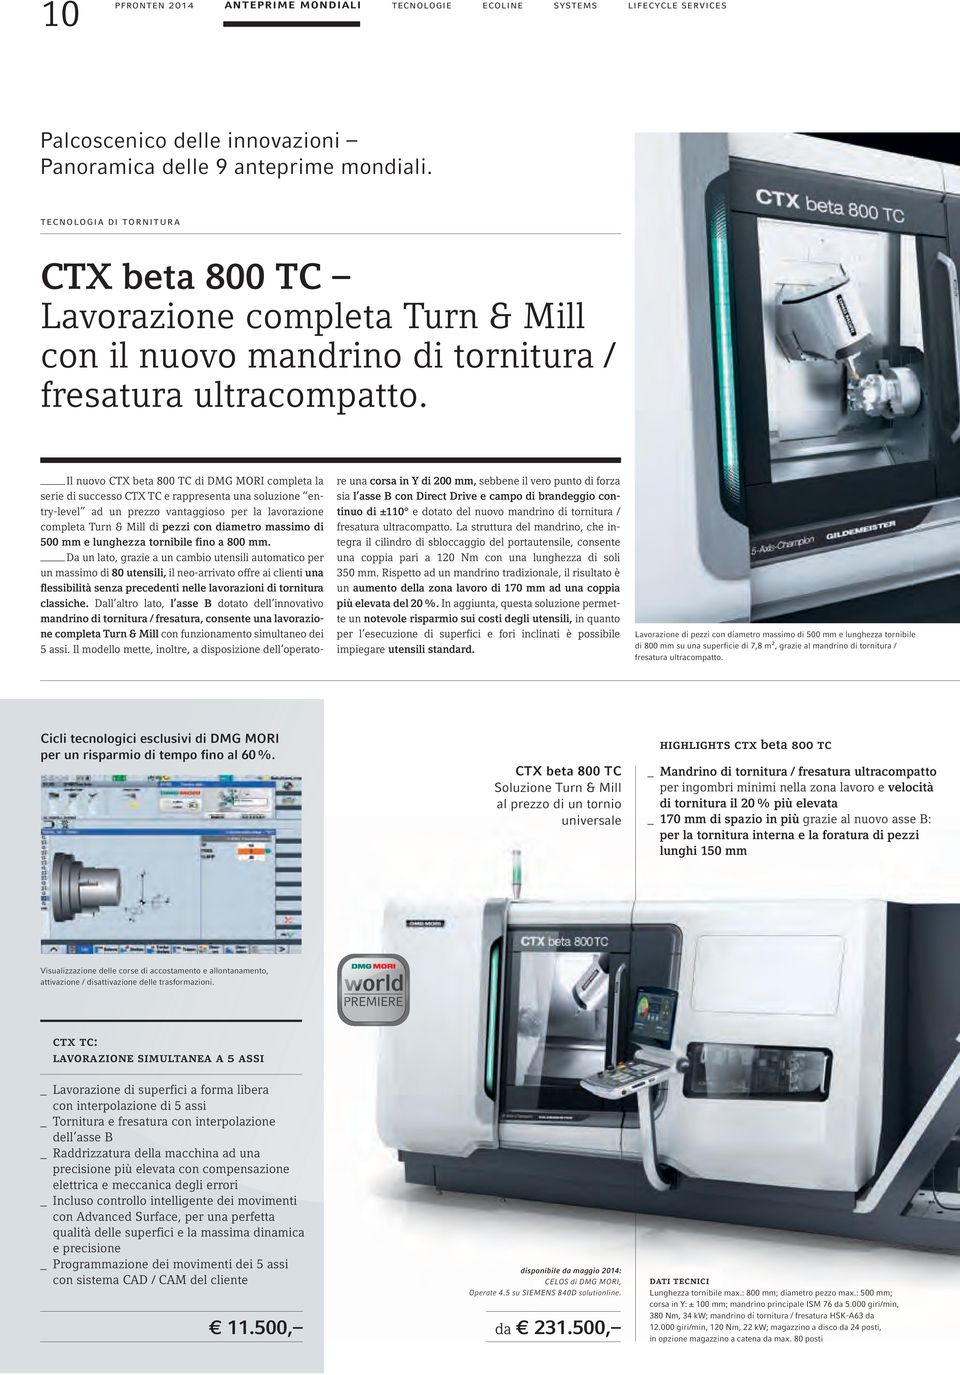 Il nuovo CTX beta 800 TC di DMG MORI completa la serie di successo CTX TC e rappresenta una soluzione entry-level ad un prezzo vantaggioso per la lavorazione completa Turn & Mill di pezzi con